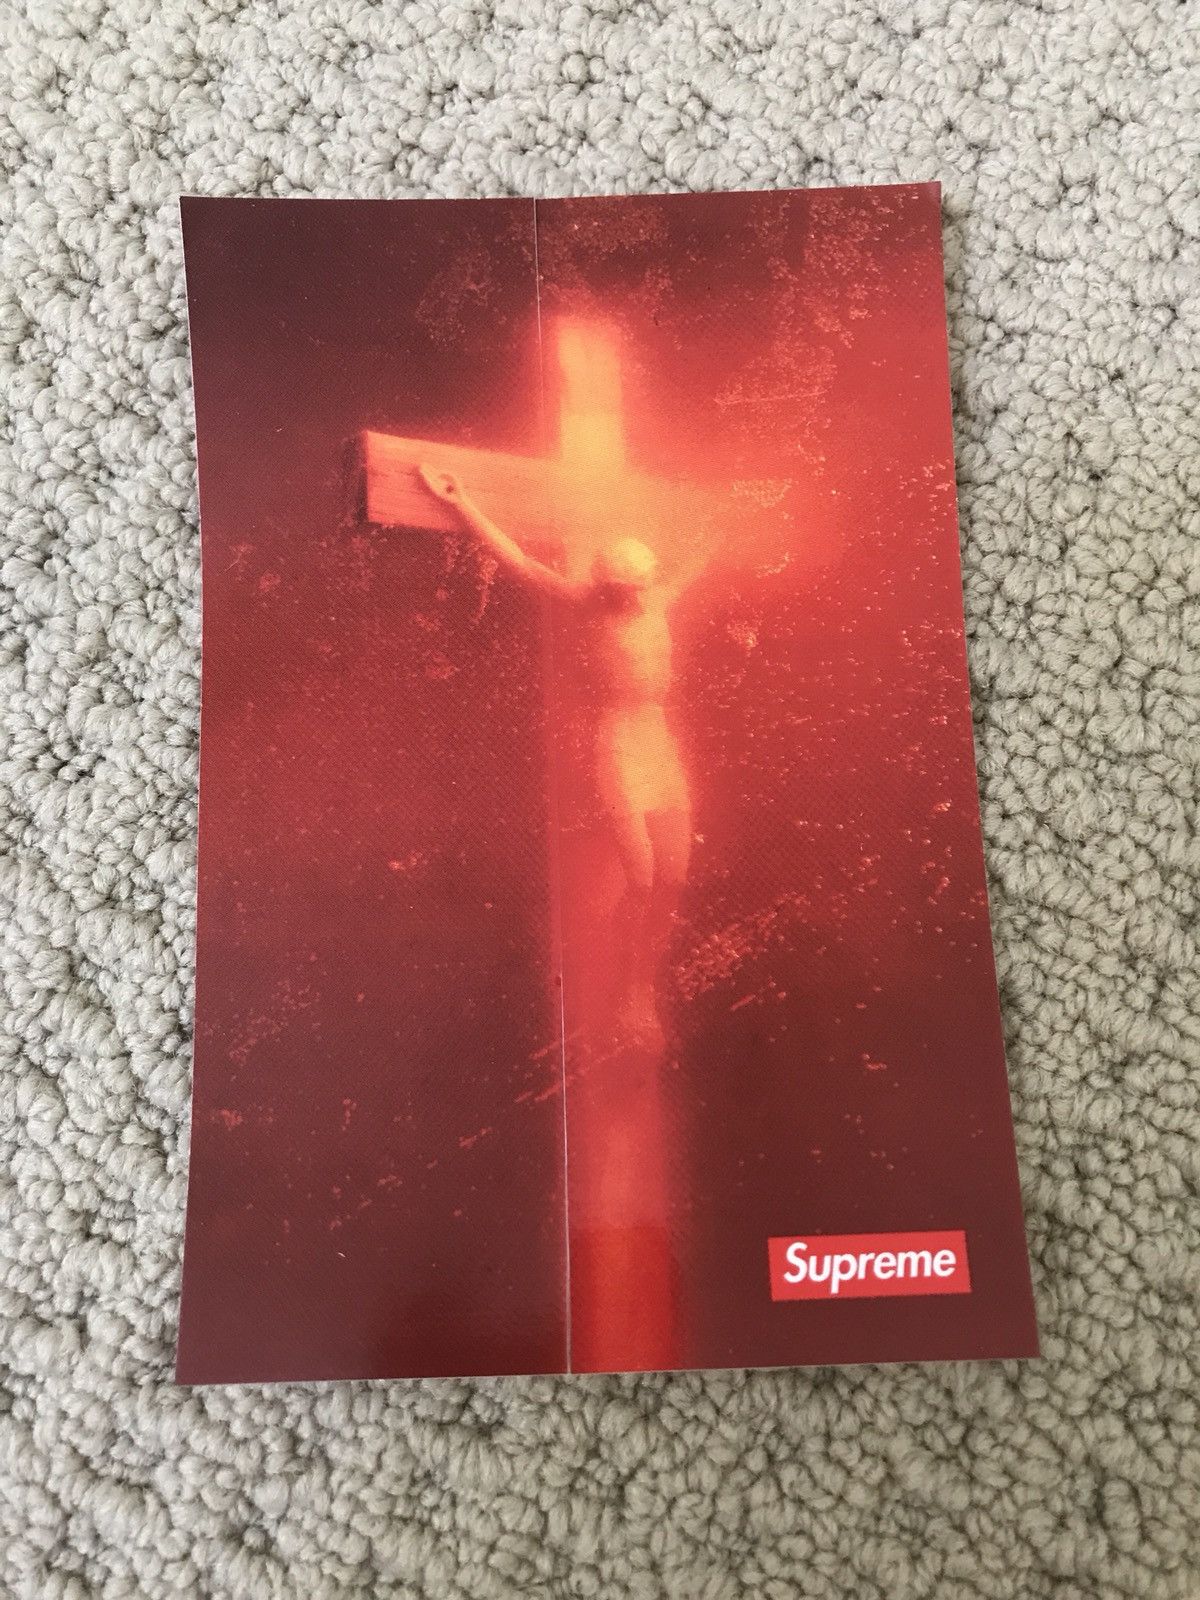 Supreme Piss Christ Supreme Sticker Grailed